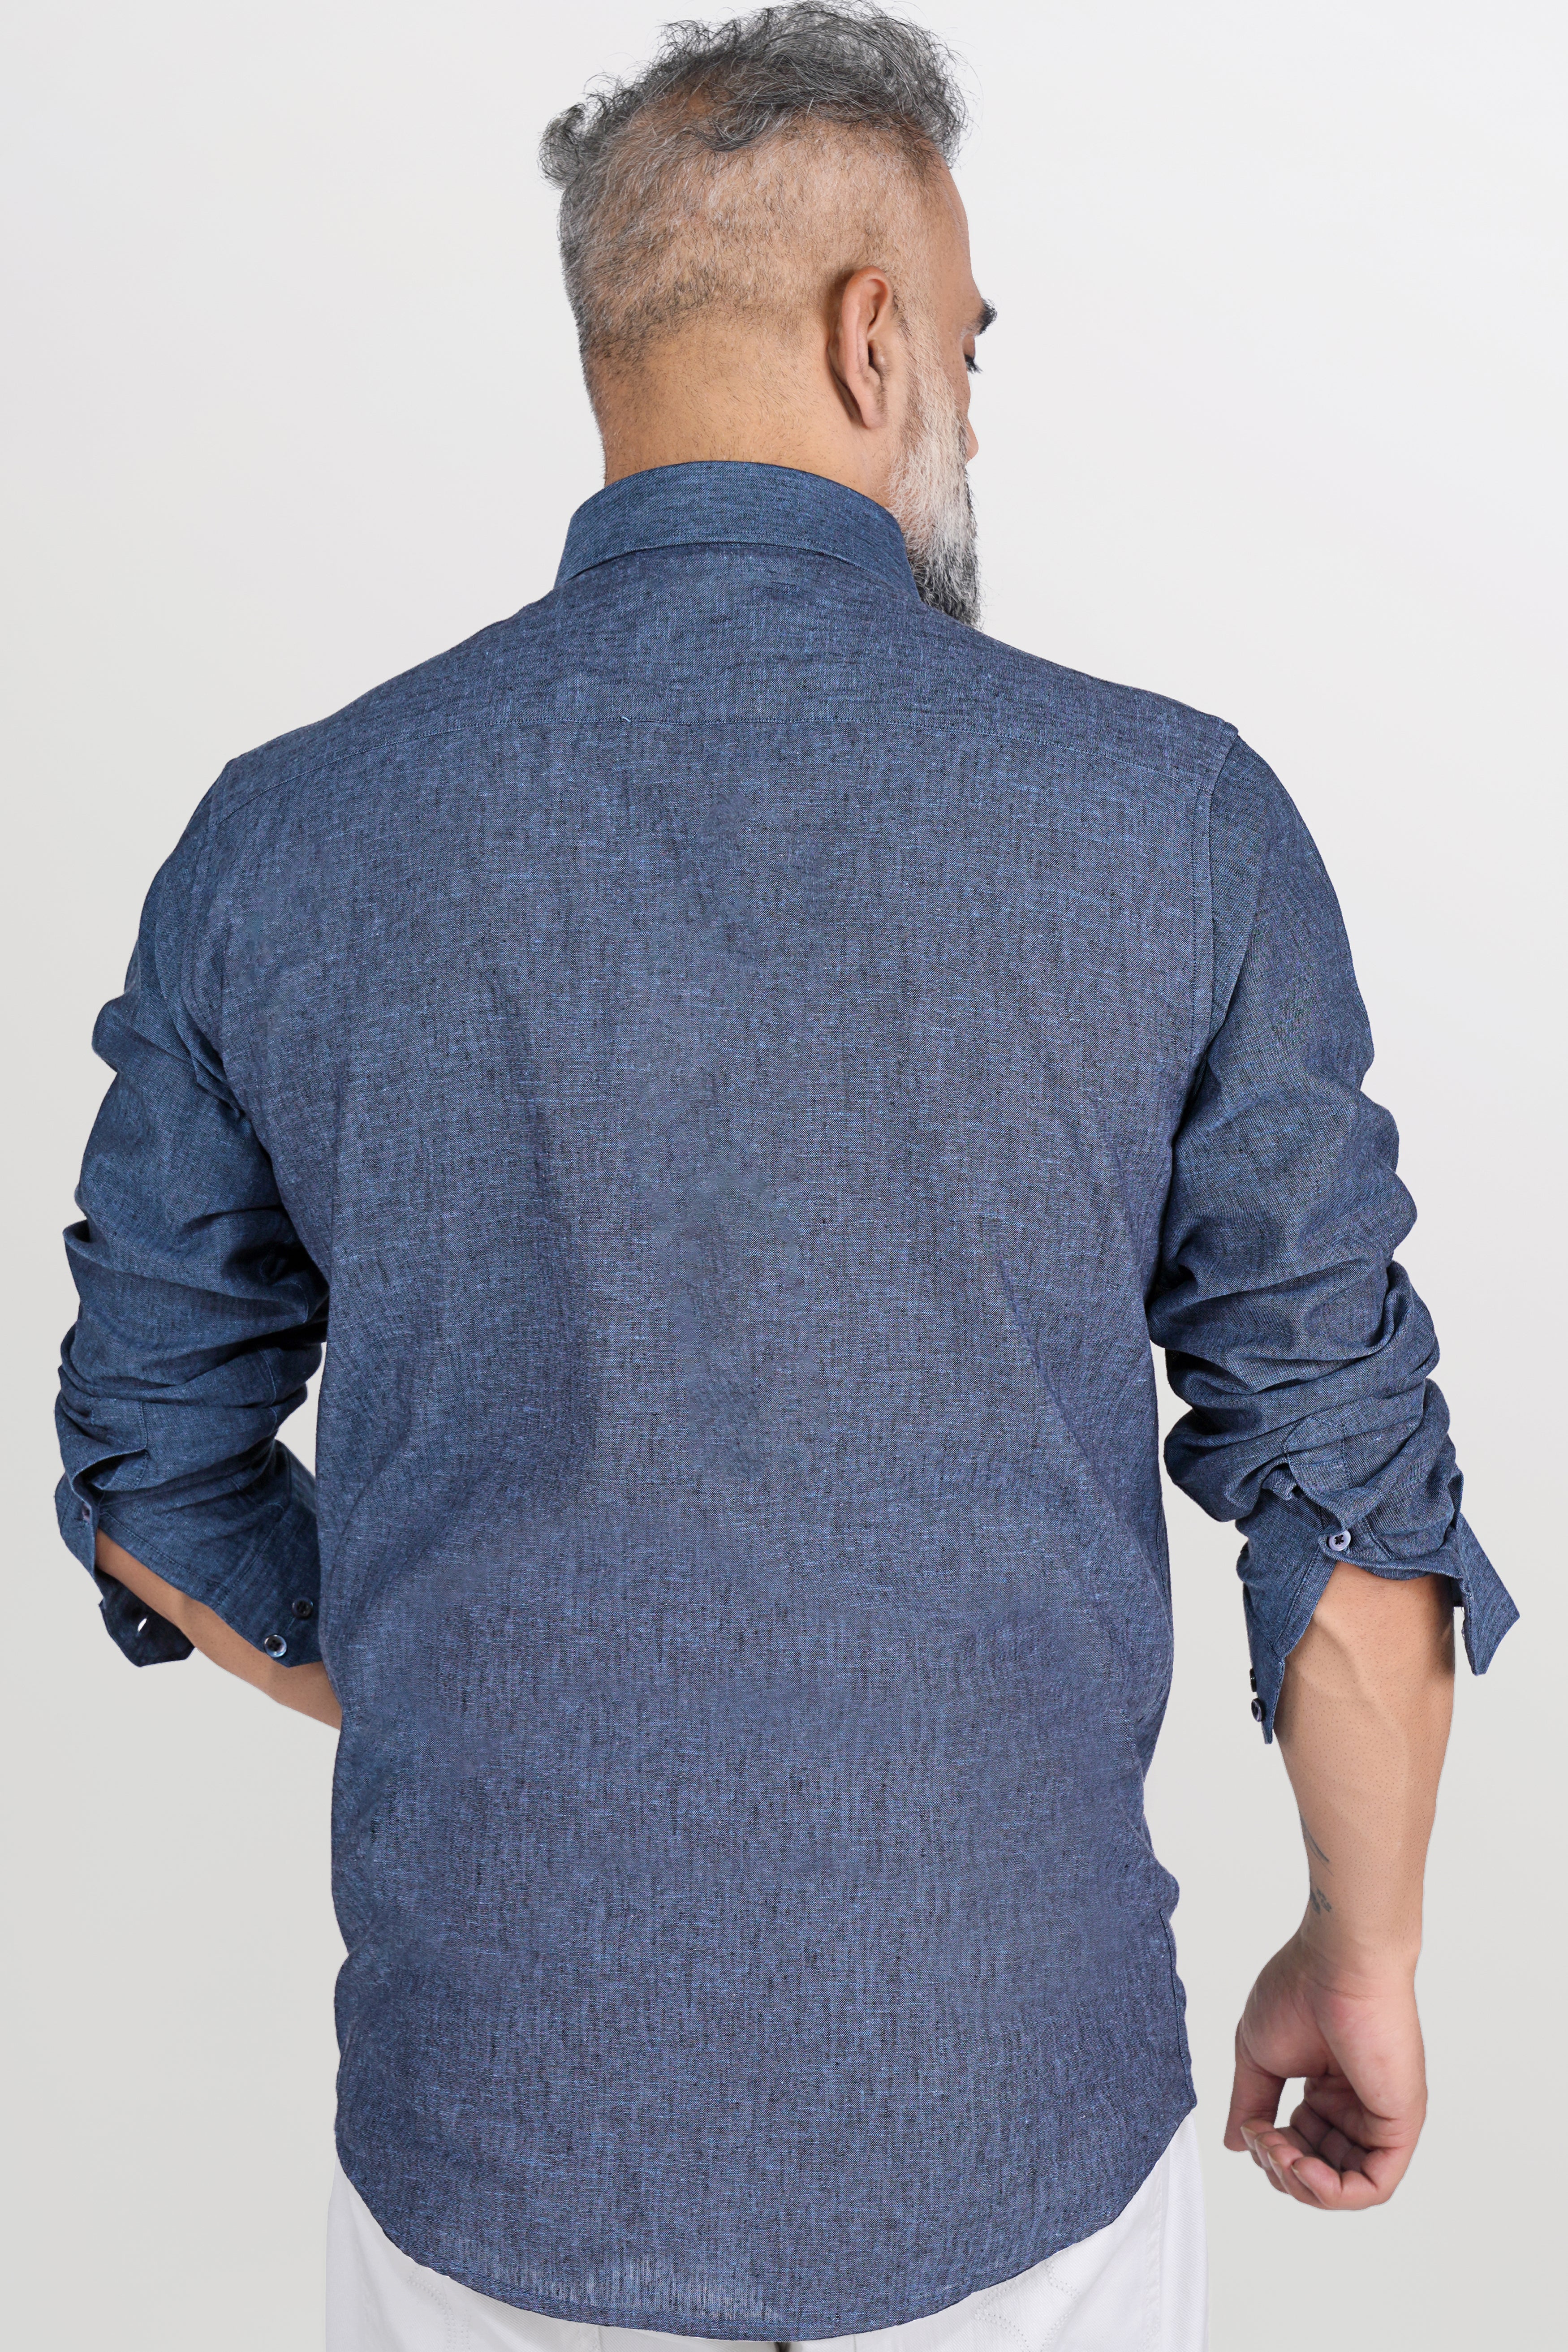 Comet Gray and Metallic Blue Luxurious Linen Shirt